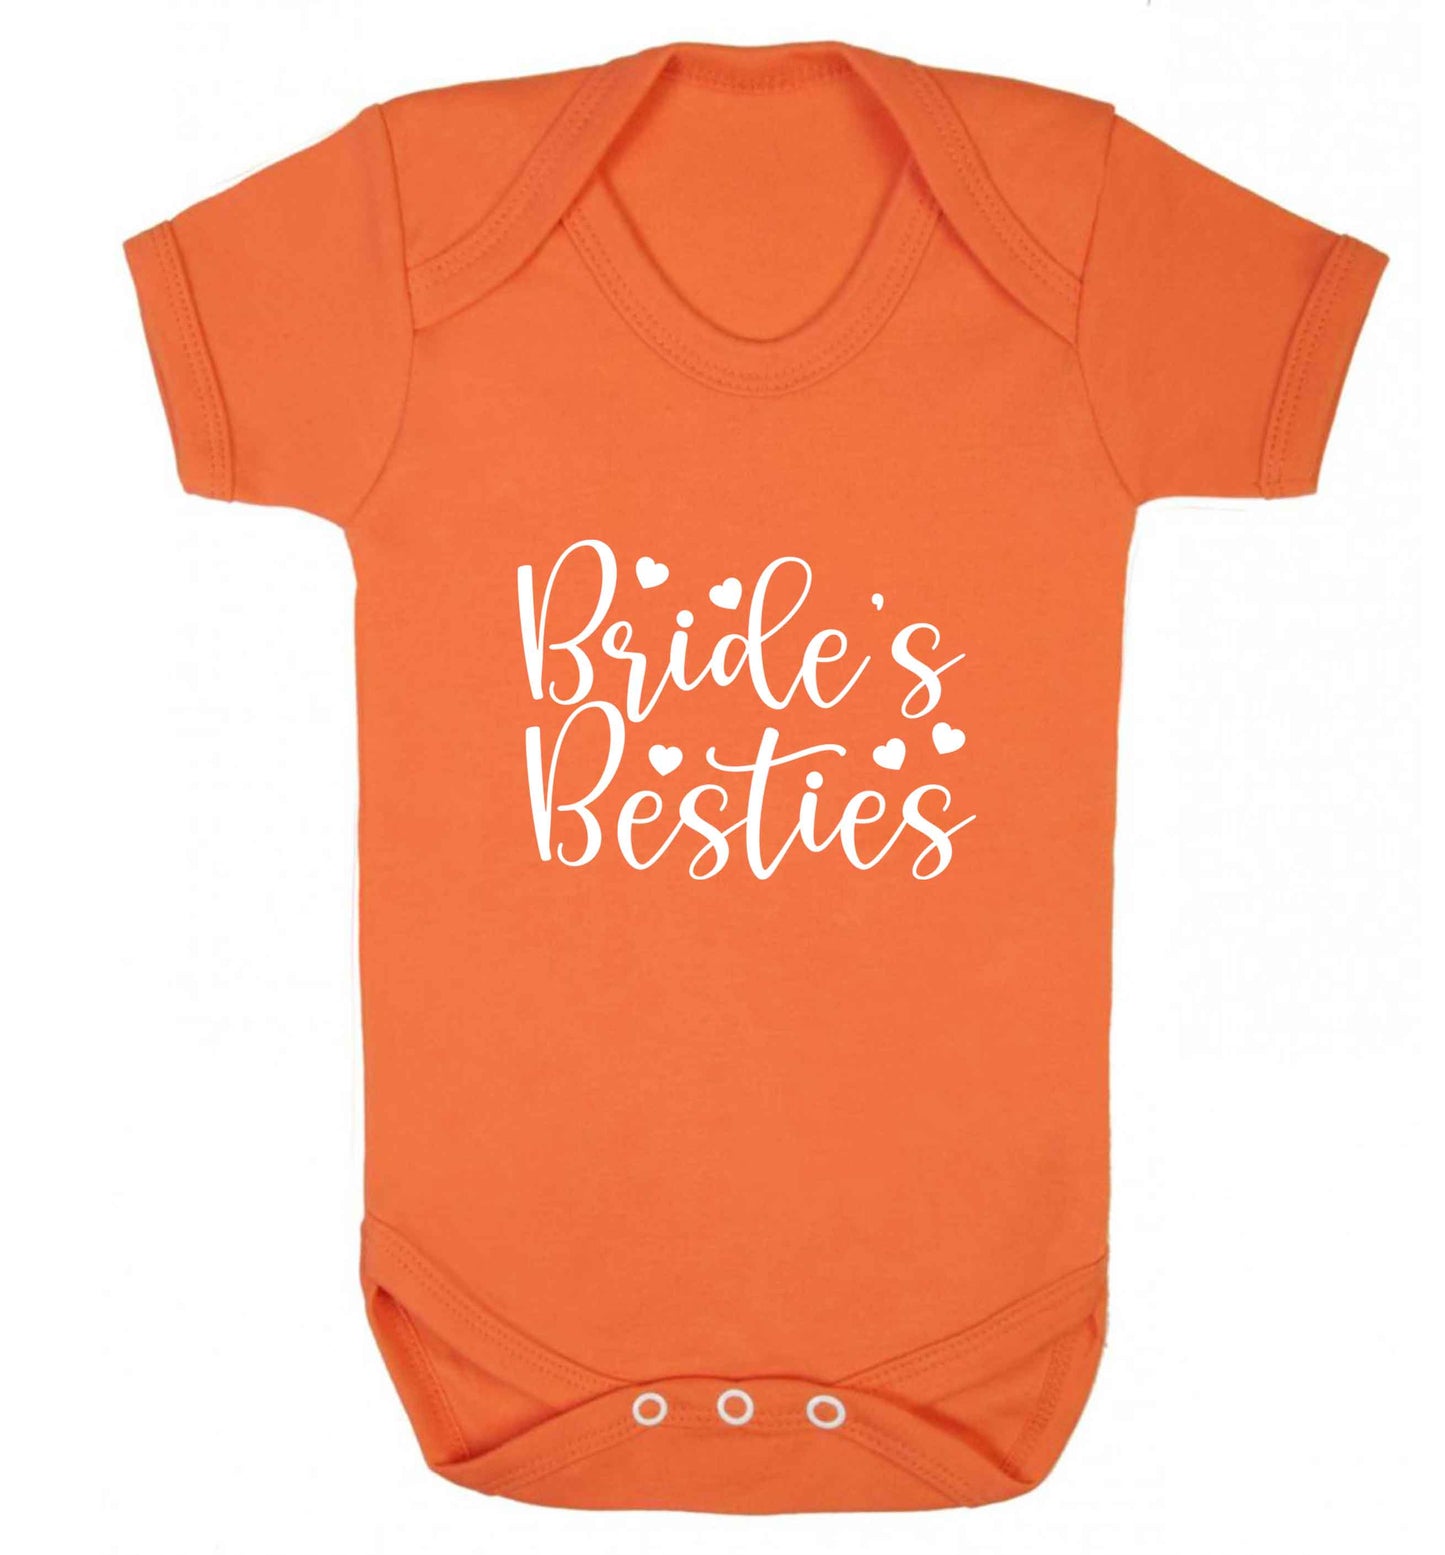 Brides besties baby vest orange 18-24 months